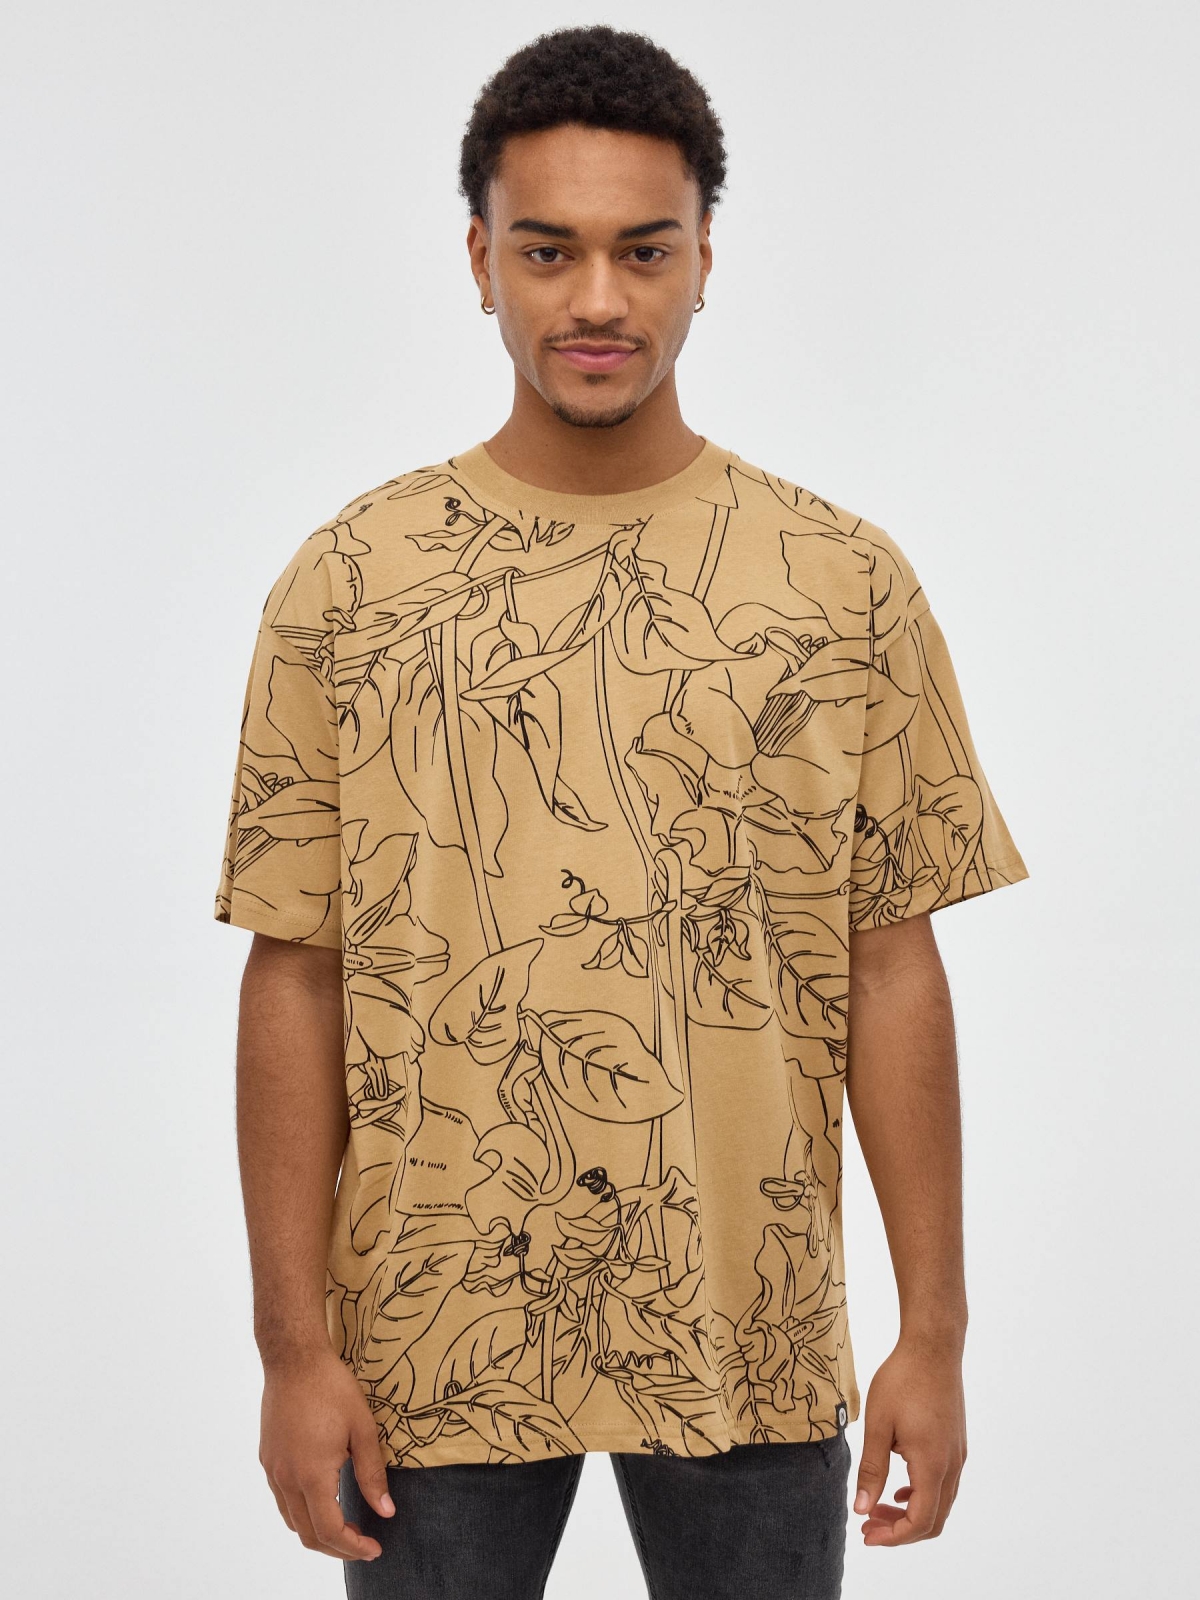 Camiseta estampado tropical marrón tierra vista media frontal